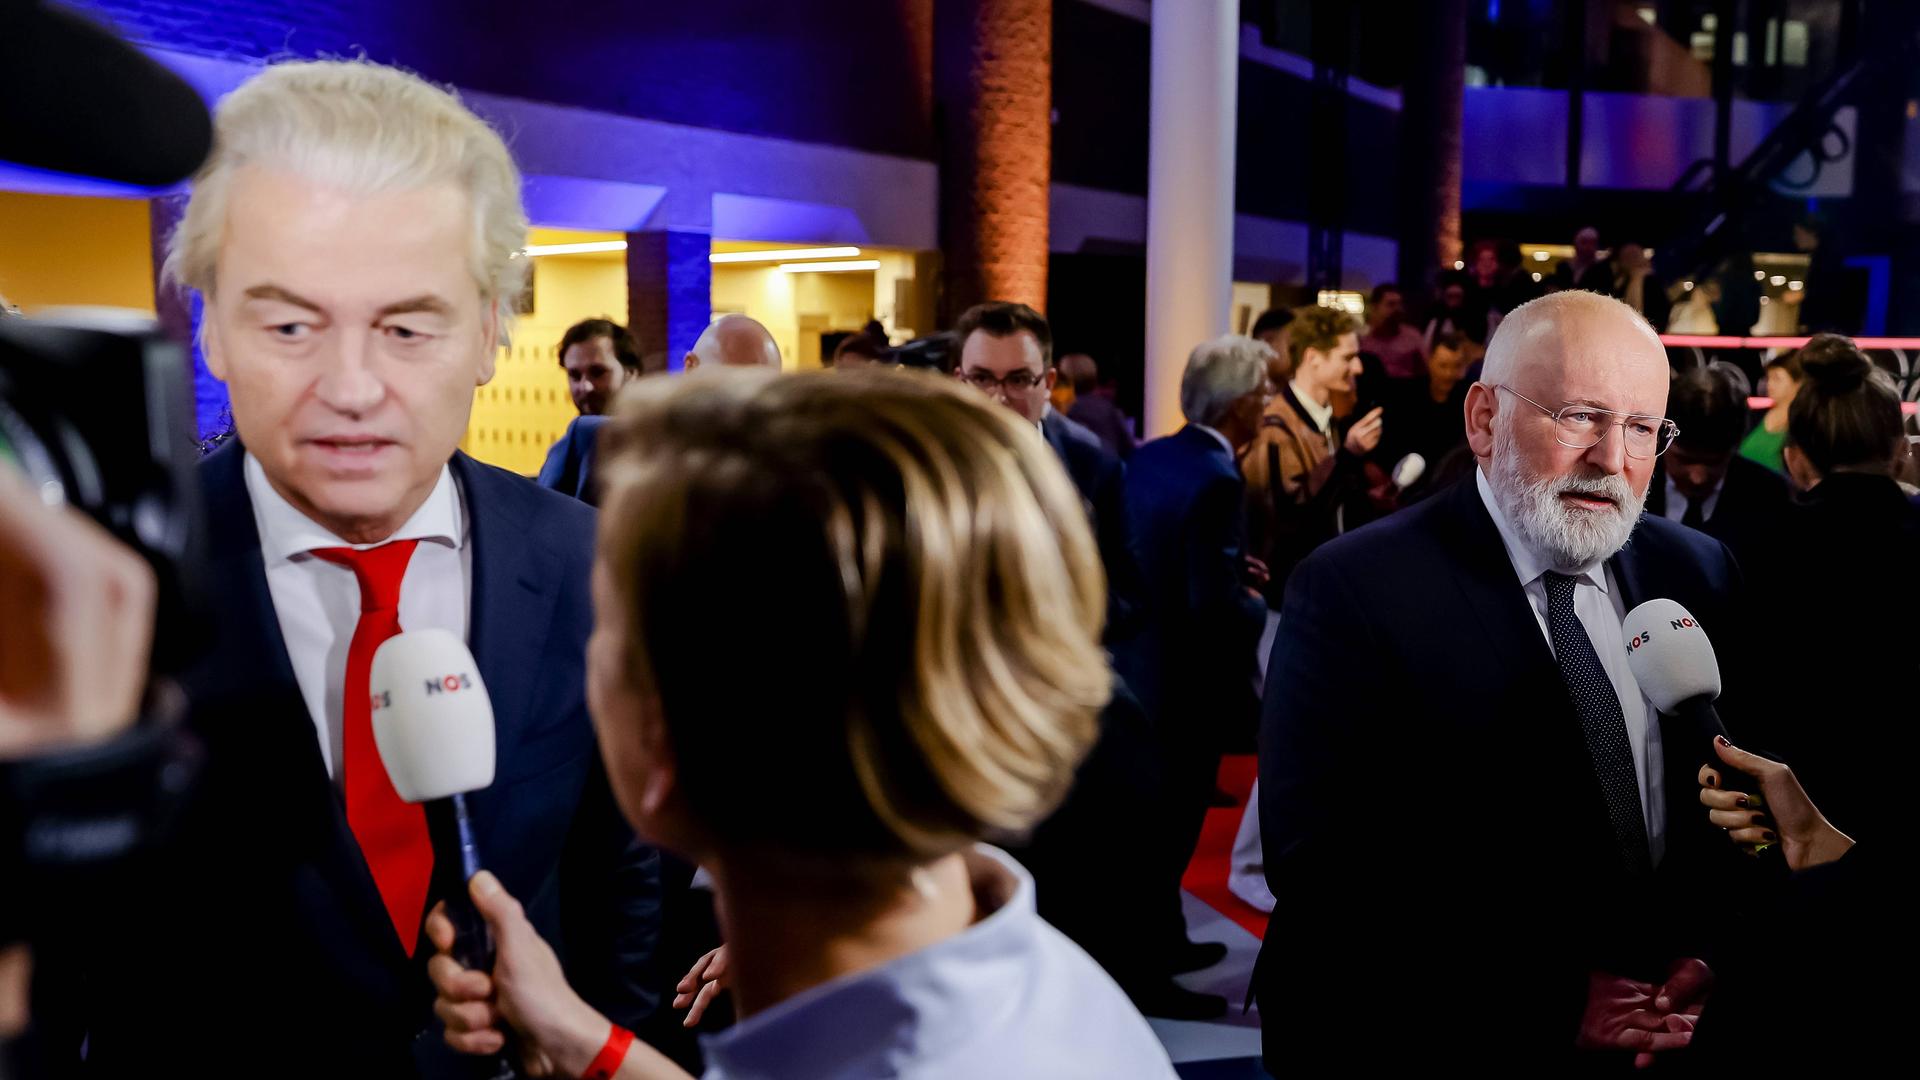 Die niederländischen Politiker Wilders und Timmermans sprechen in Presse-Mikrofone.